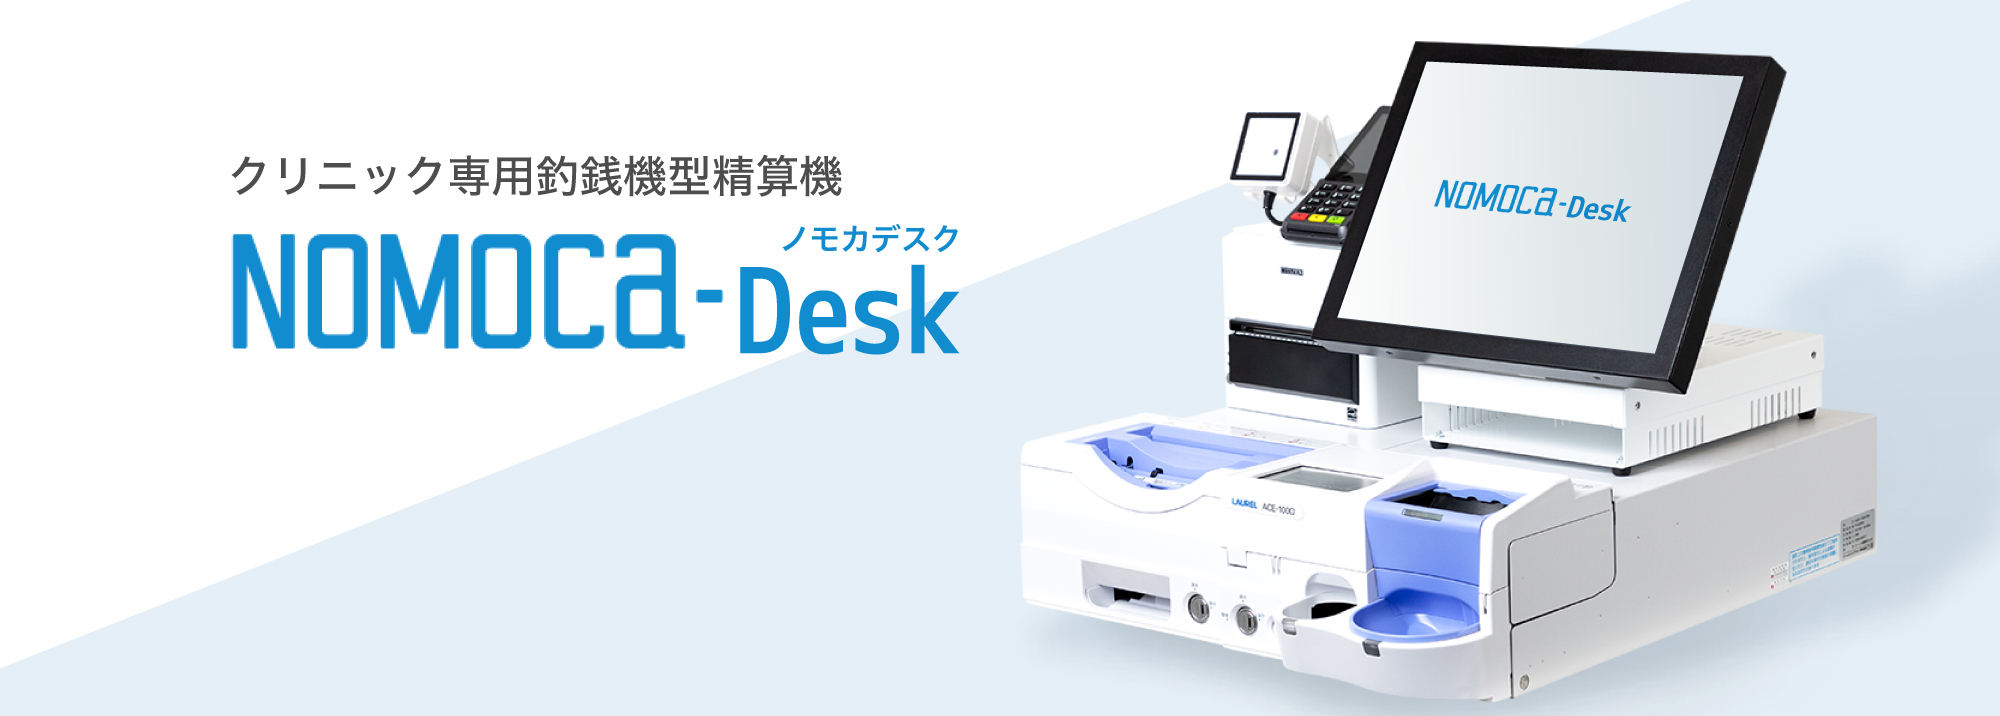 クリニック専用自動釣銭機・セルフレジNOMOCa-Desk